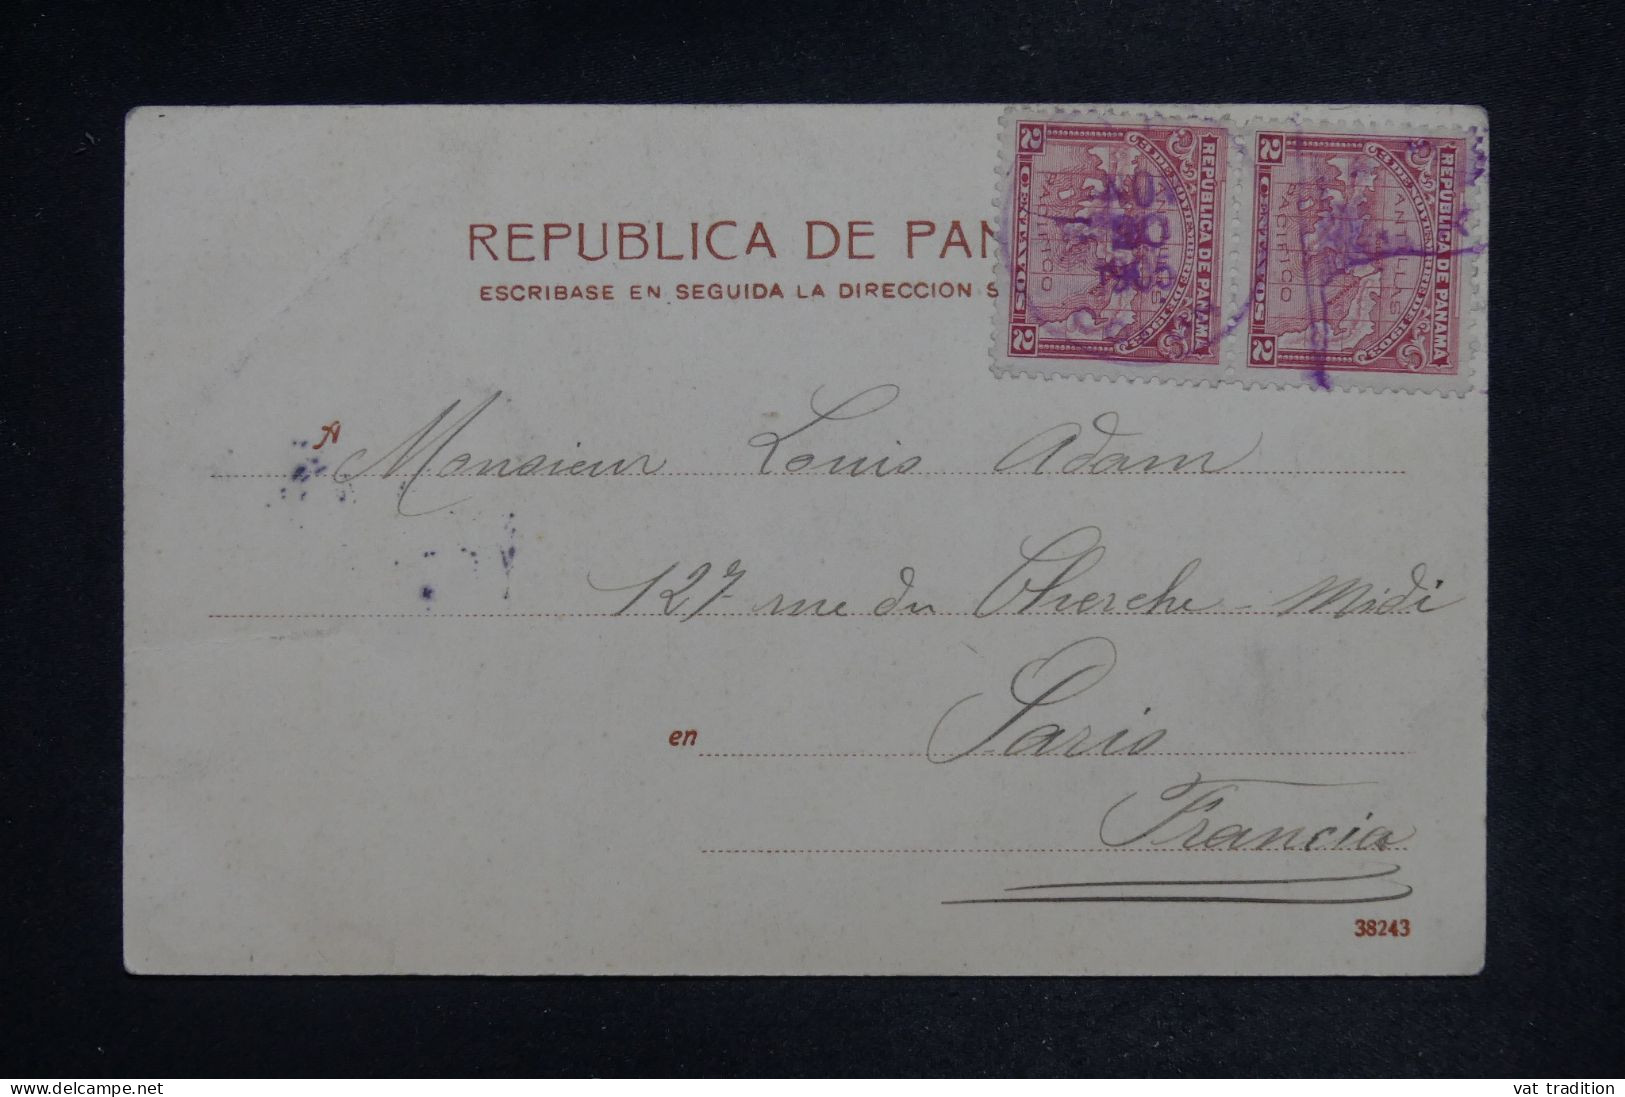 PANAMA - Carte Postale Pour La France En 1905 - L 151946 - Panama